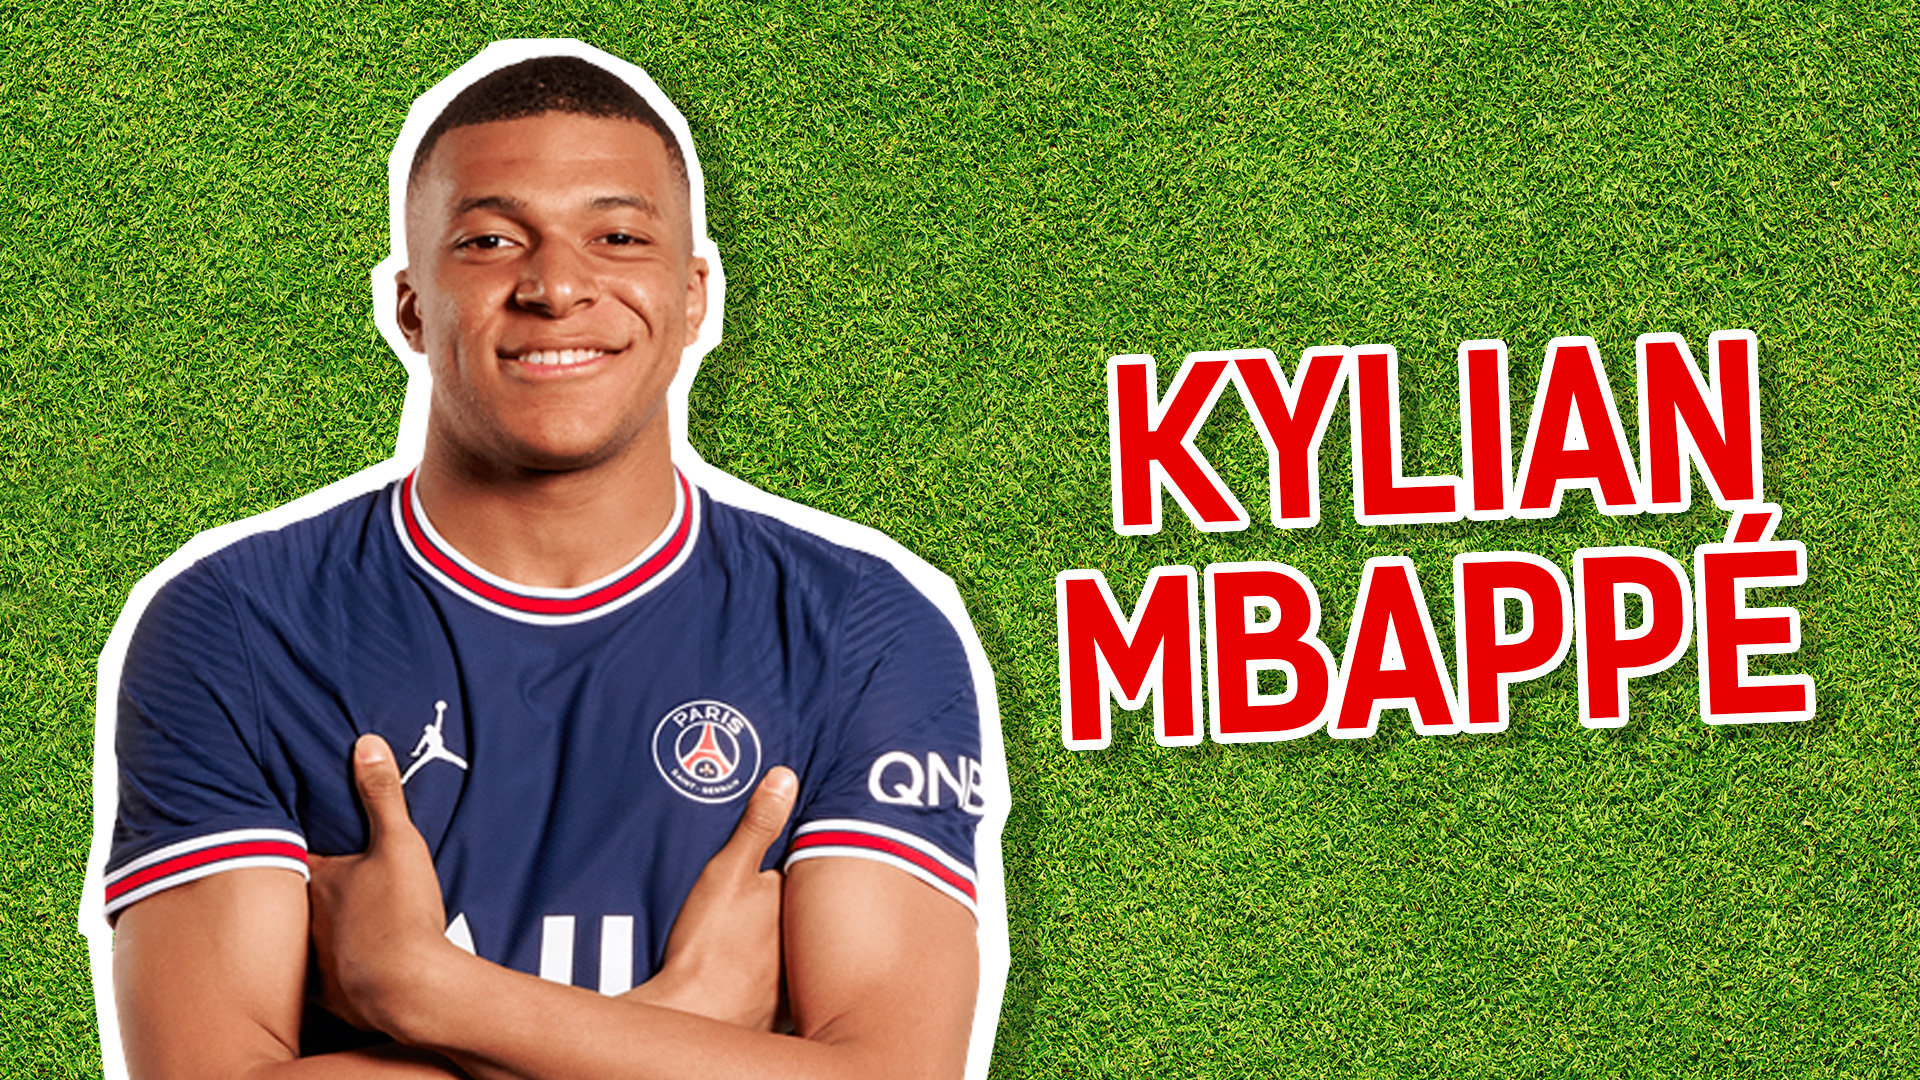 Paris St. Germain player Kylian Mbappé